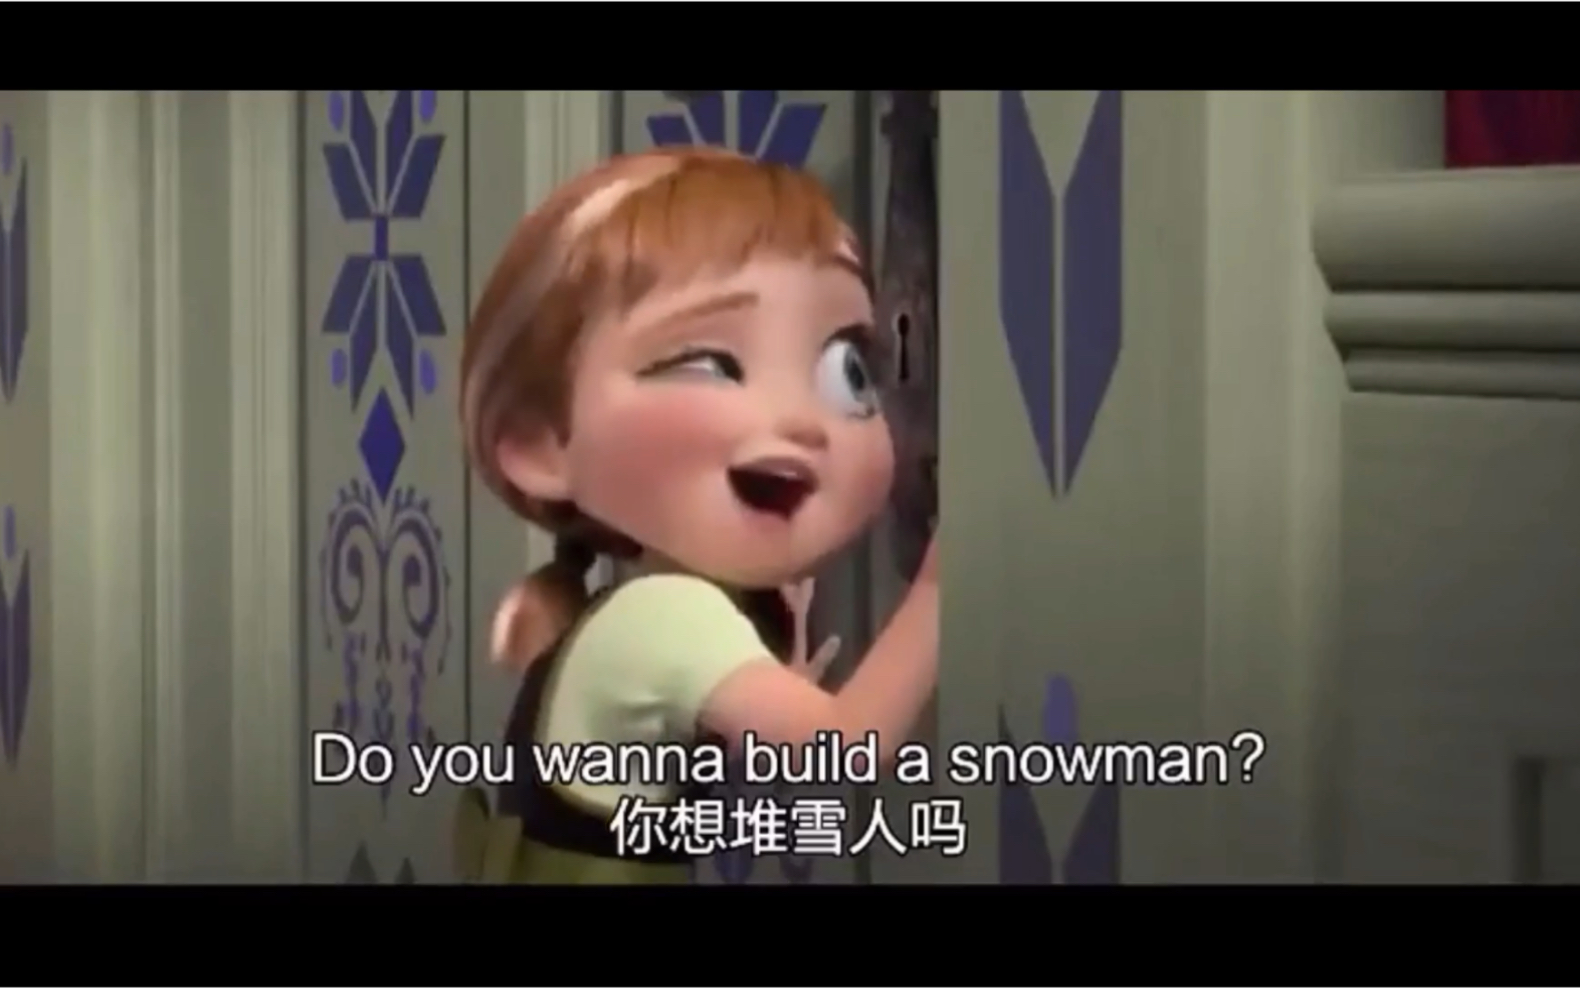 英语配音冰雪奇缘艾尔莎你想堆雪人吗